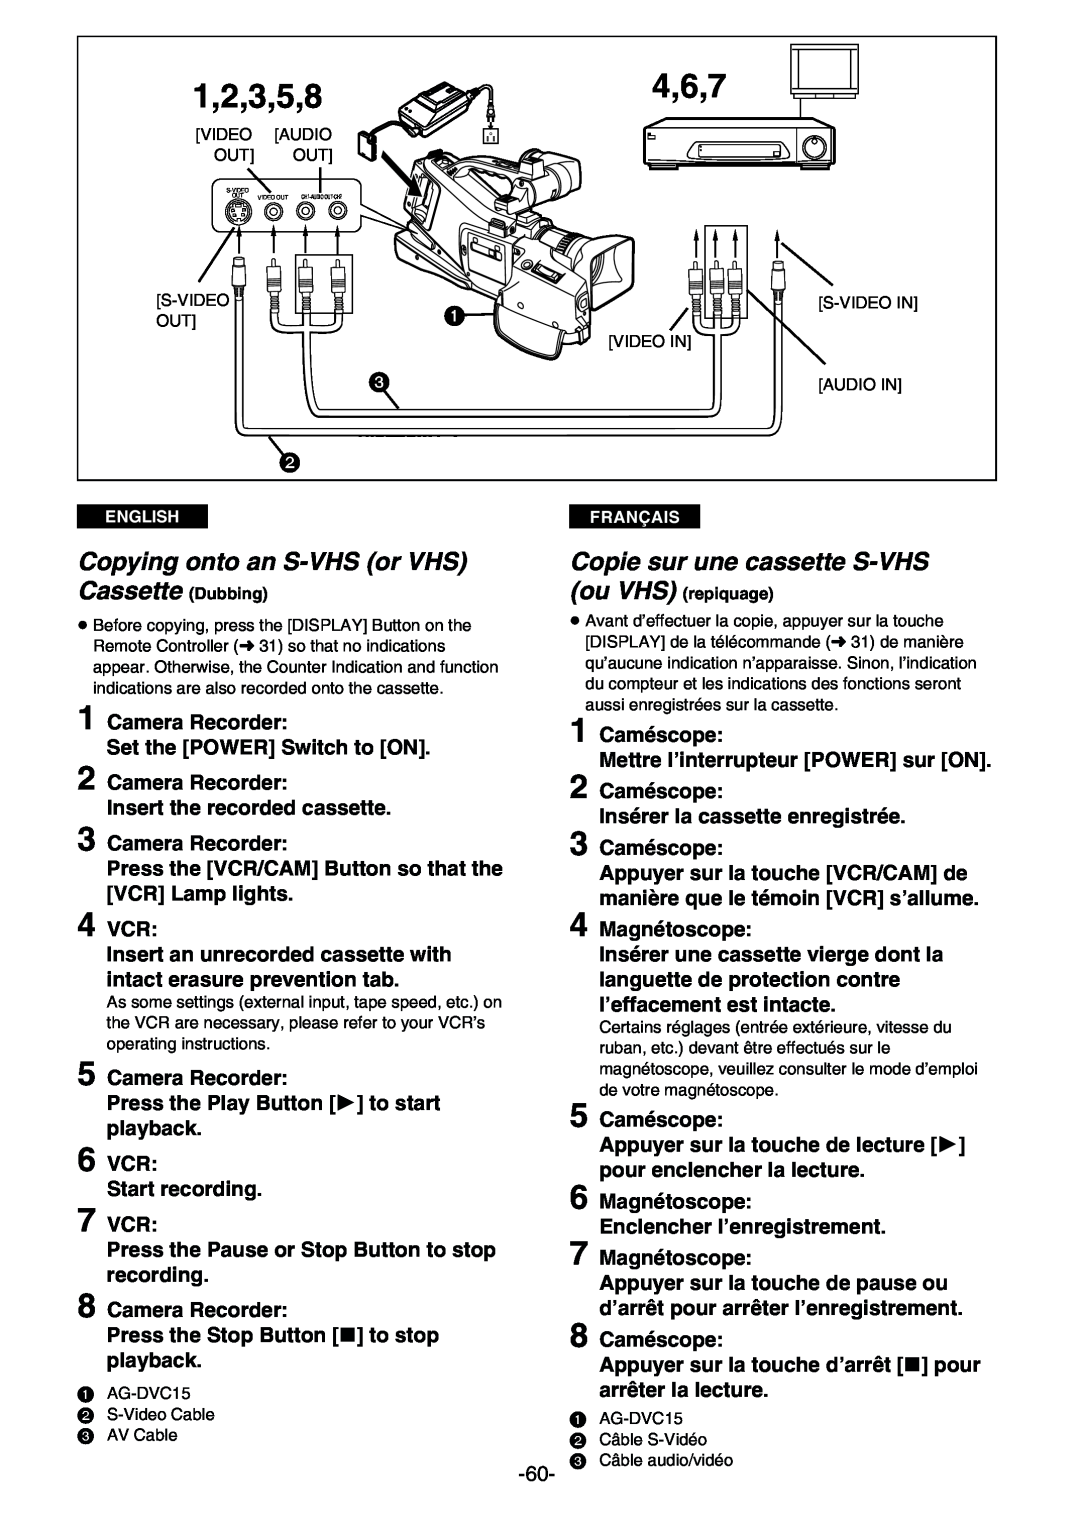 Panasonic AG- DVC 15P manual 4,6,7, 1,2,3,5,8, Copying onto an S-VHS or VHS Cassette Dubbing, Copie sur une cassette S-VHS 